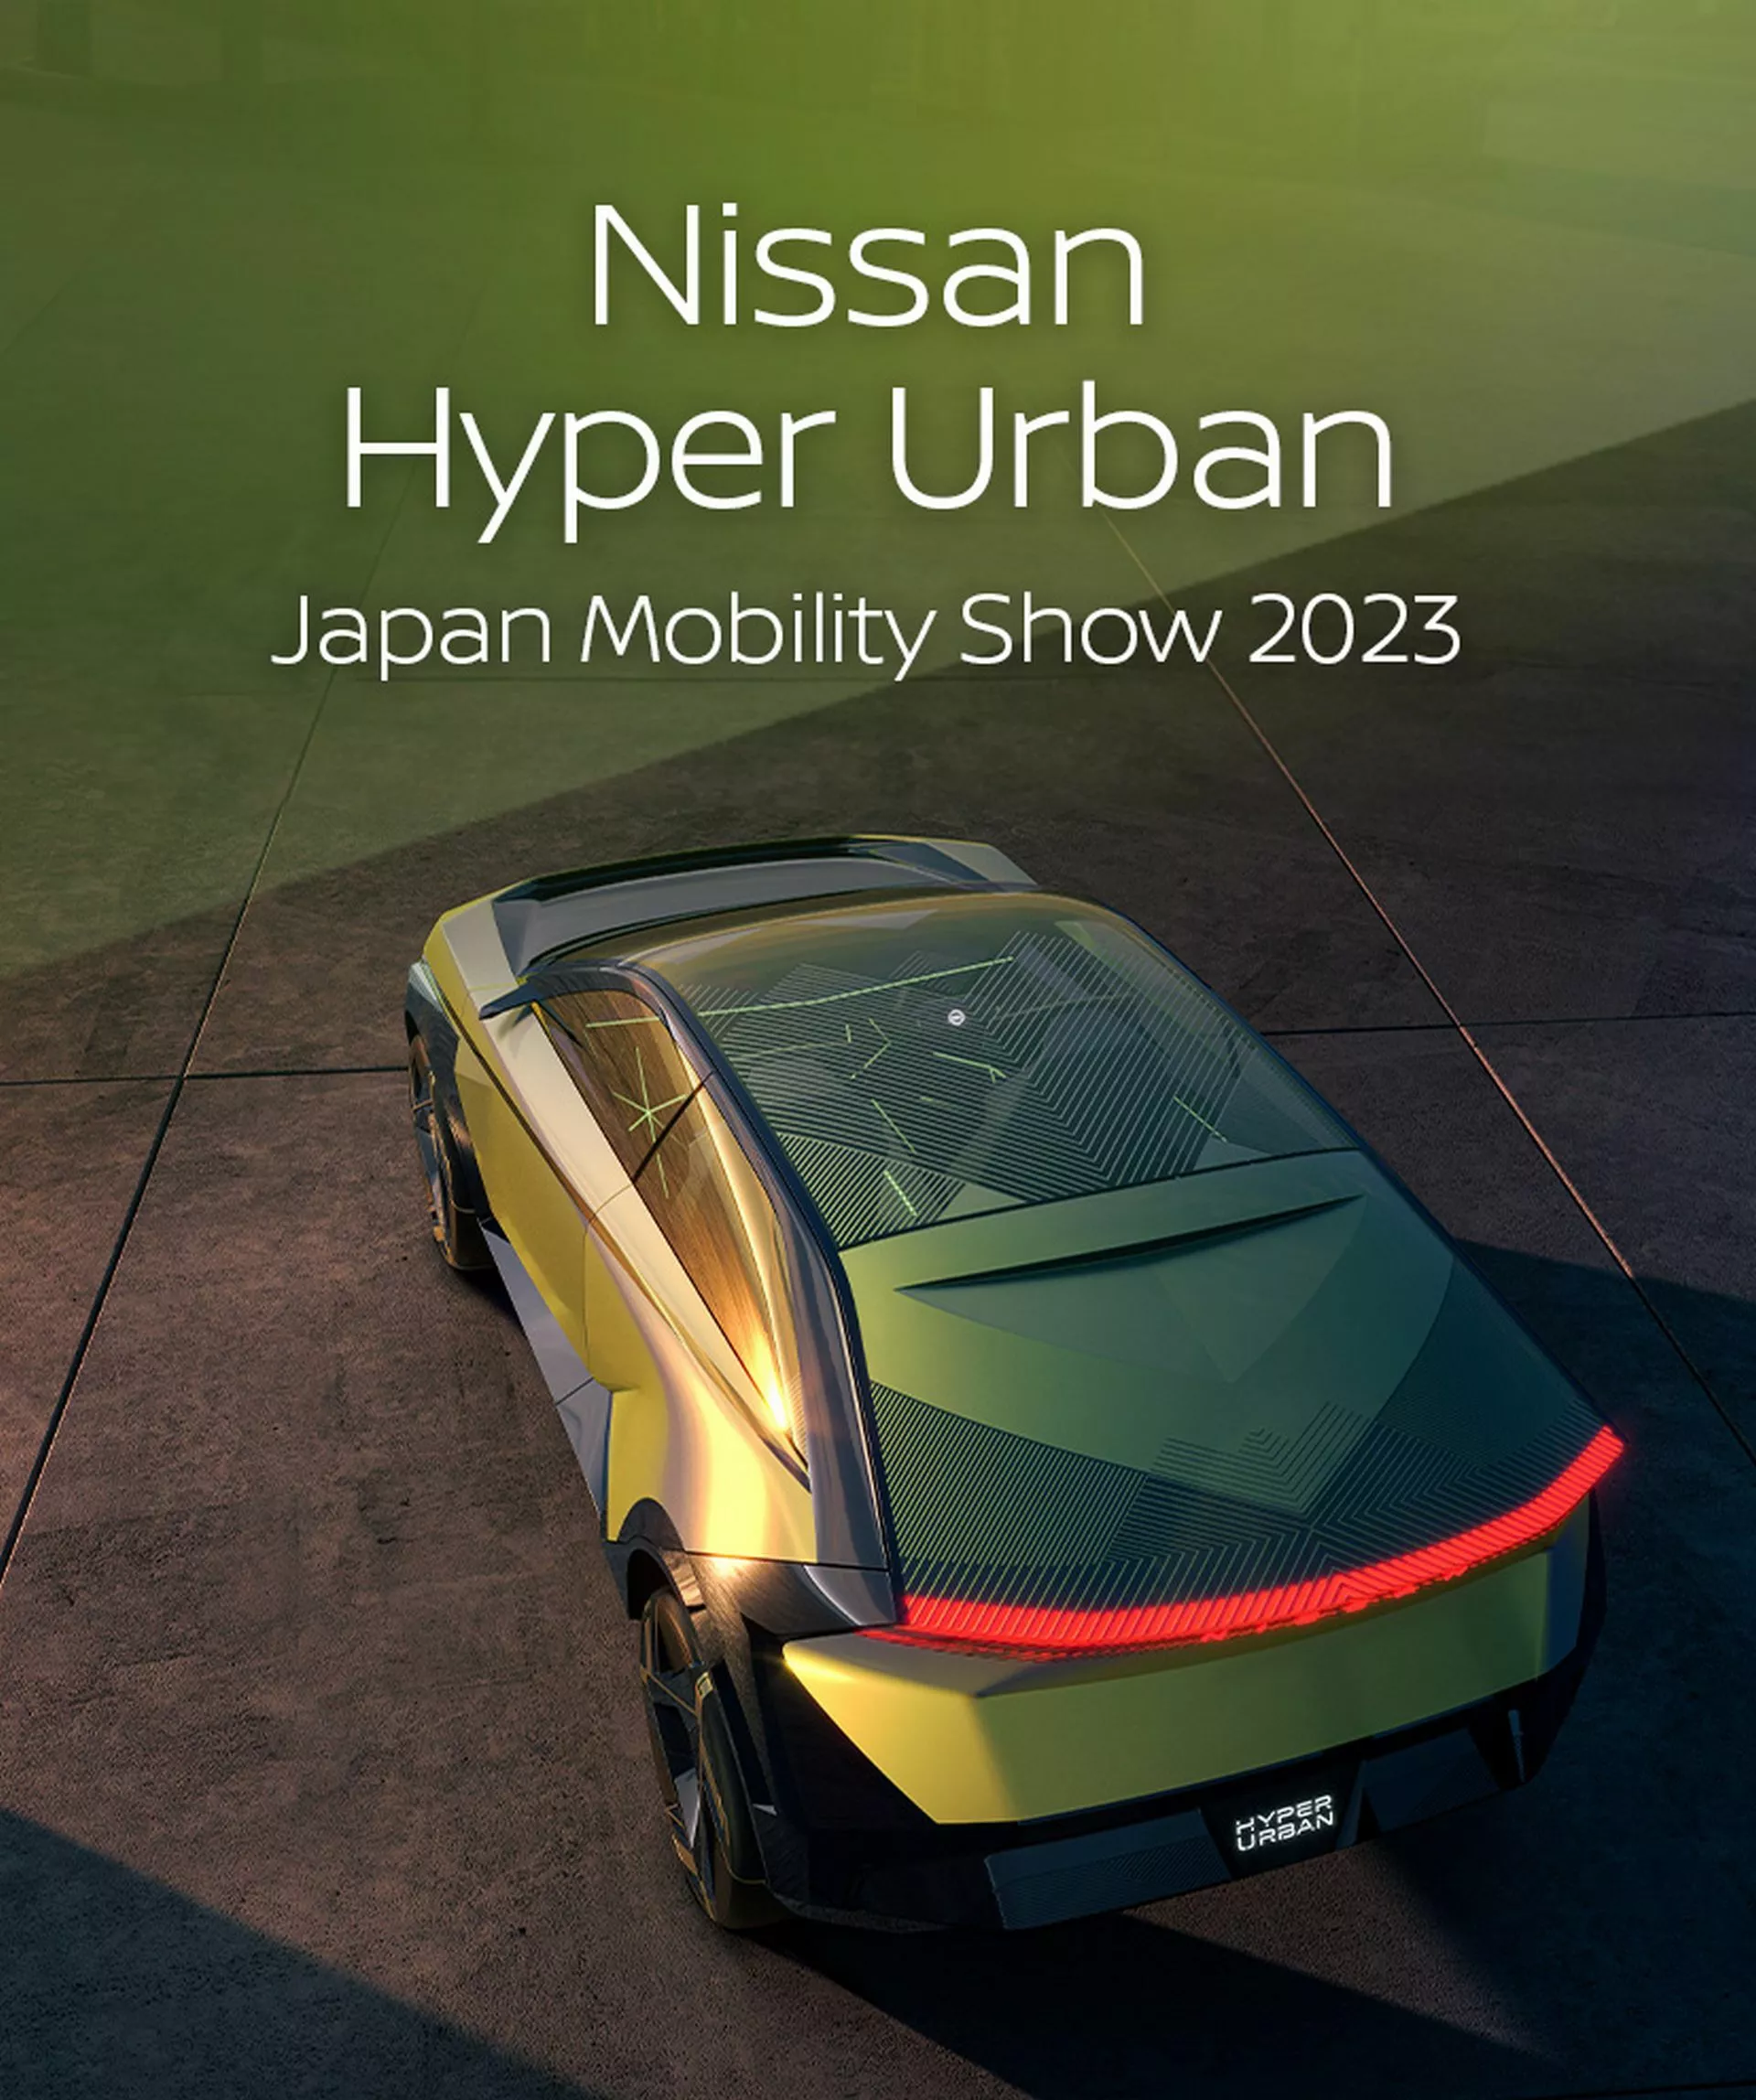 نيسان هايبر اوربان هي SUV اختبارية جديدة تجسد المستقبل الكهربائي للعلامة 8